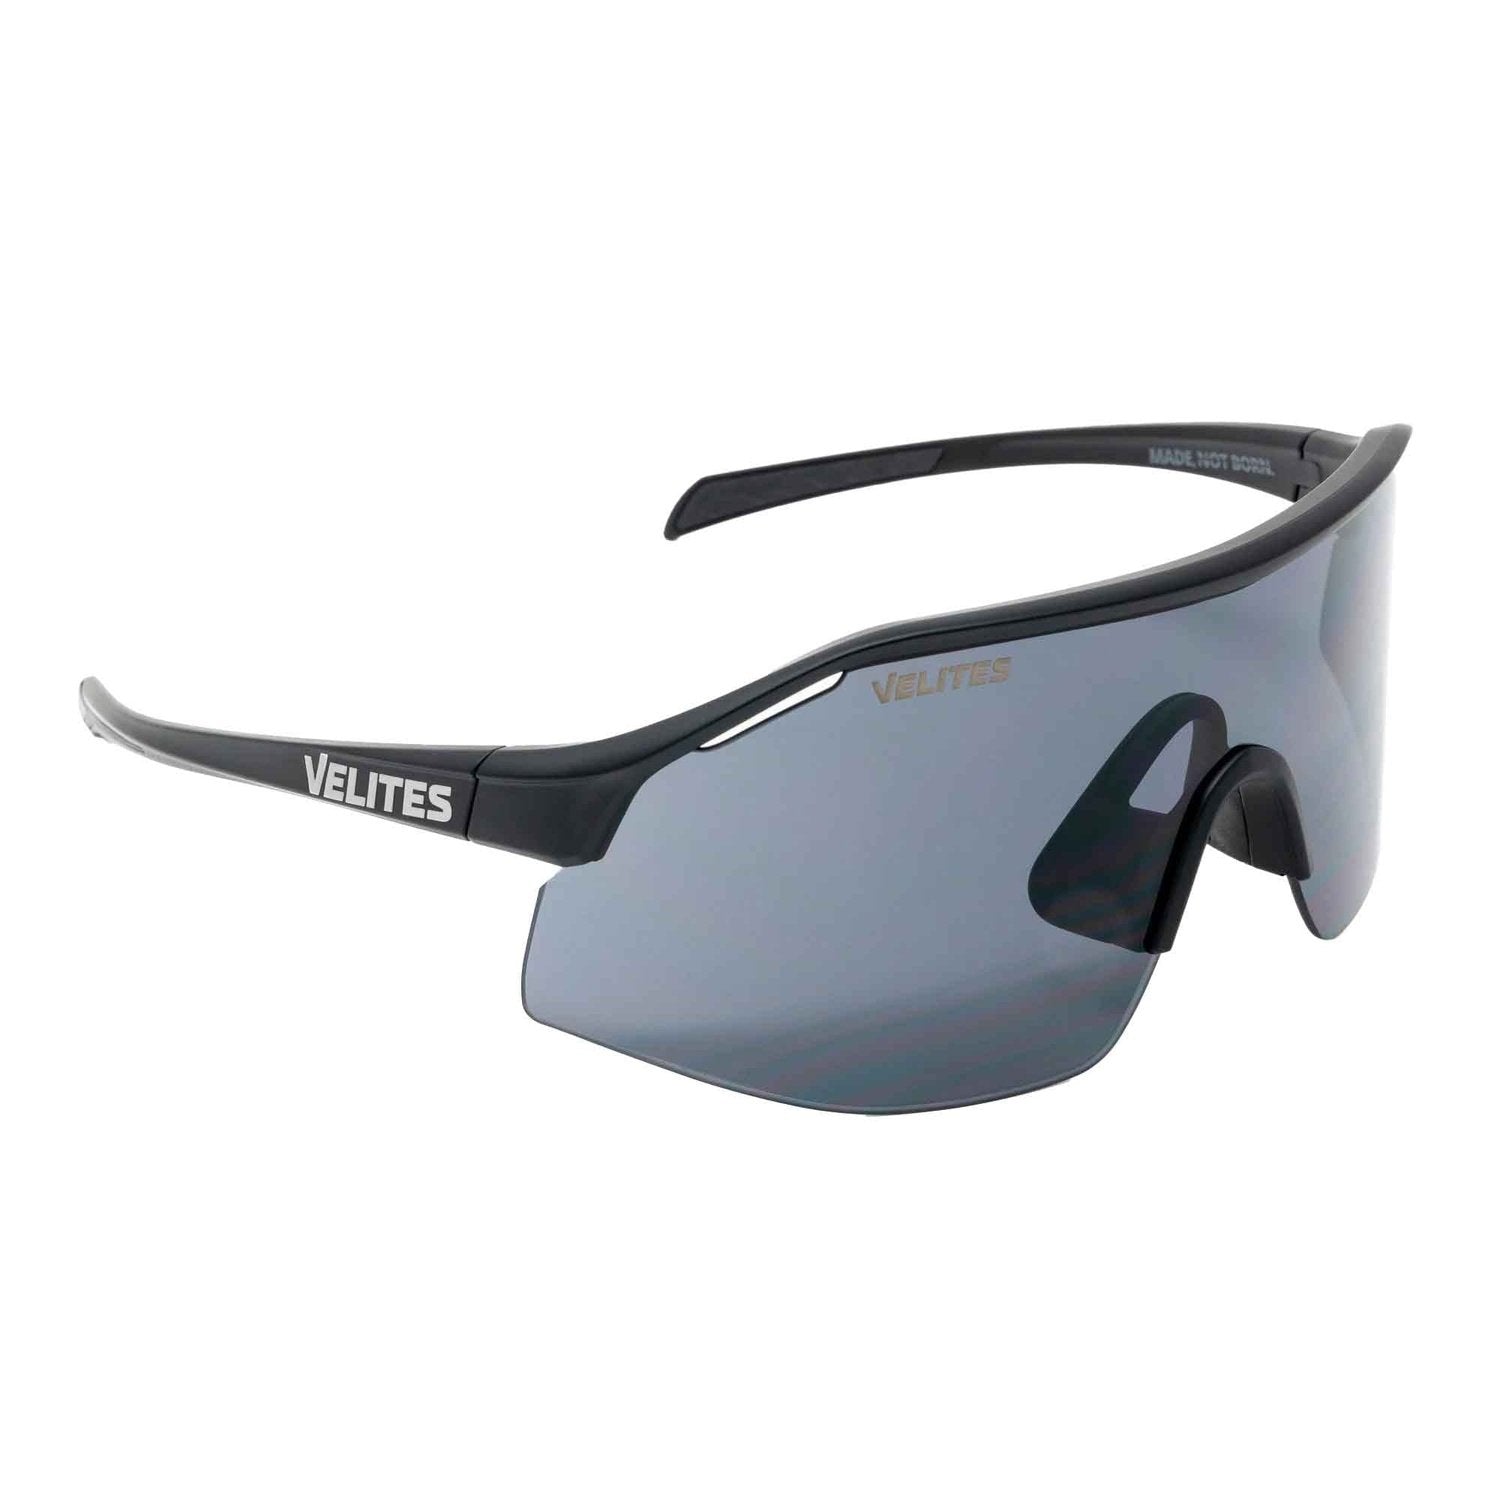 Velites Sonnenbrille "Raptor Sport" kaufen bei HighPowered.ch